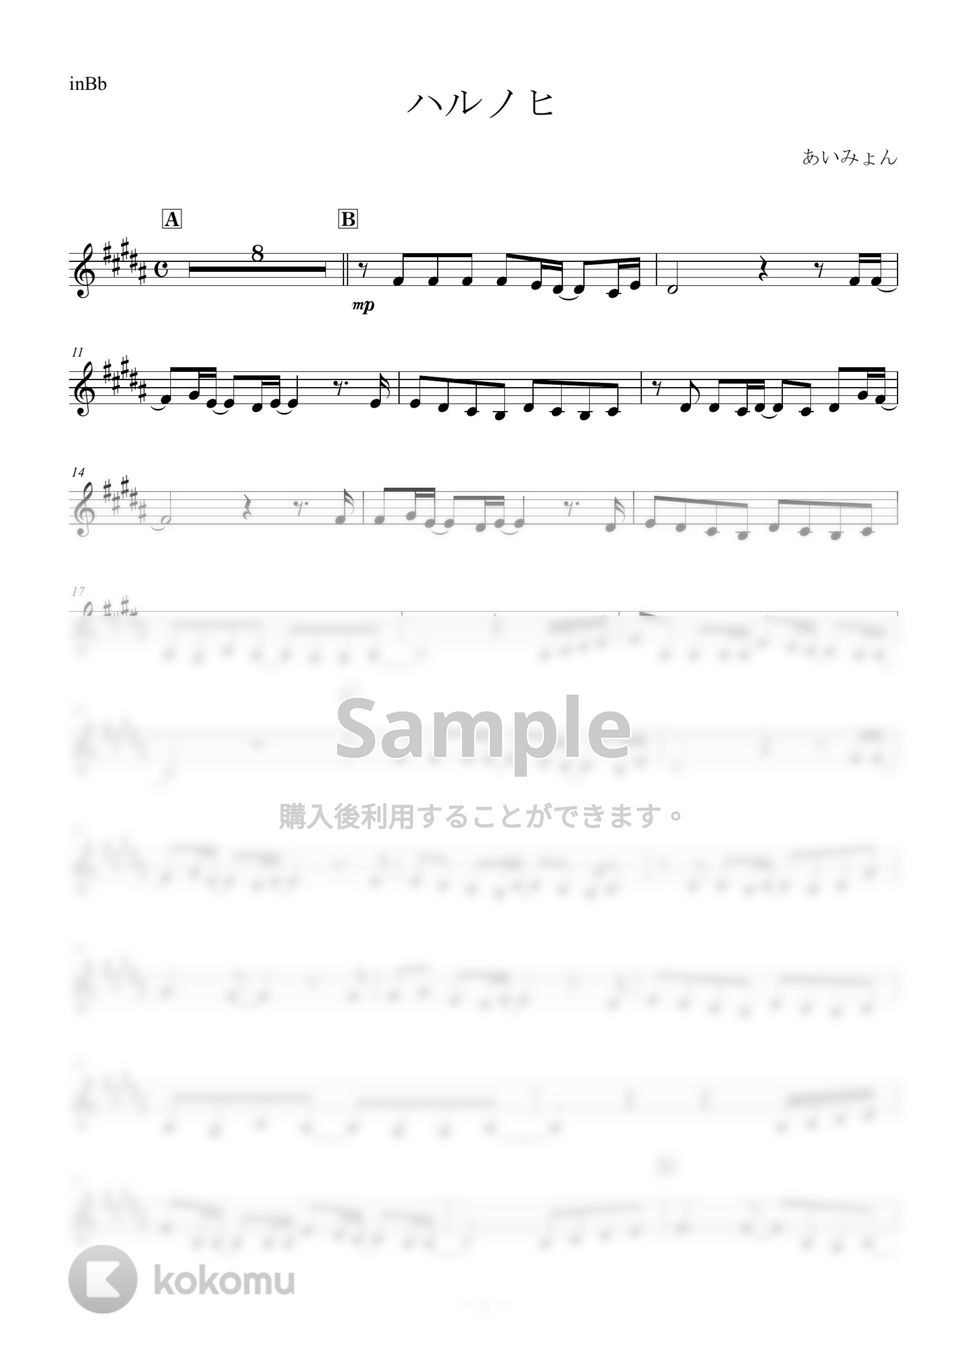 あいみょん - ハルノヒ by メロディ専門譜